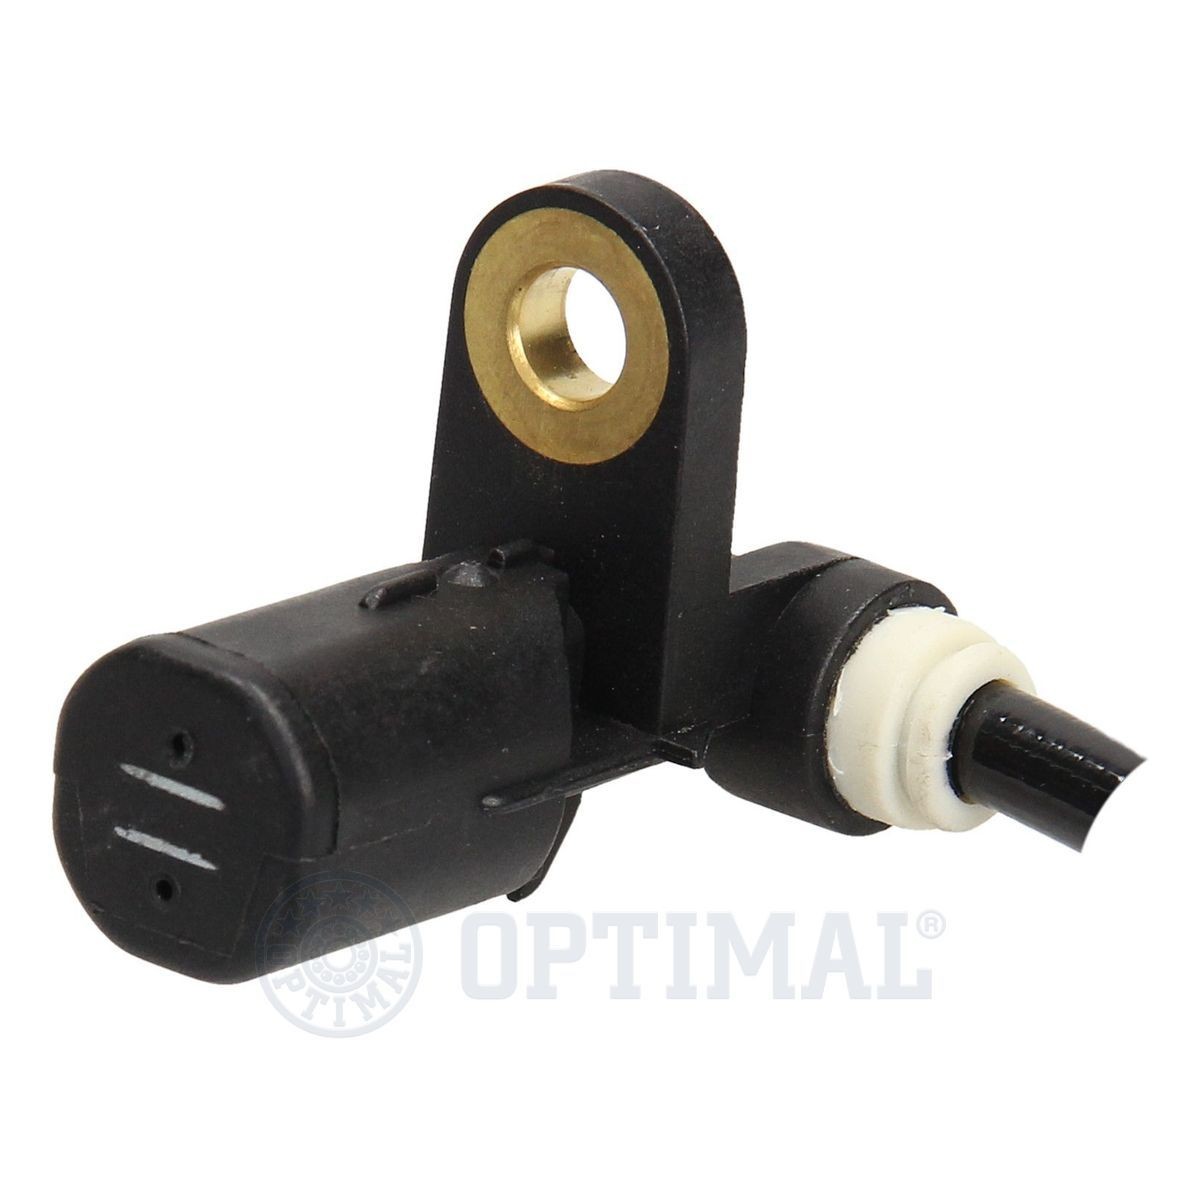 06S698 Anti lock brake sensor OPTIMAL 06-S698 review and test